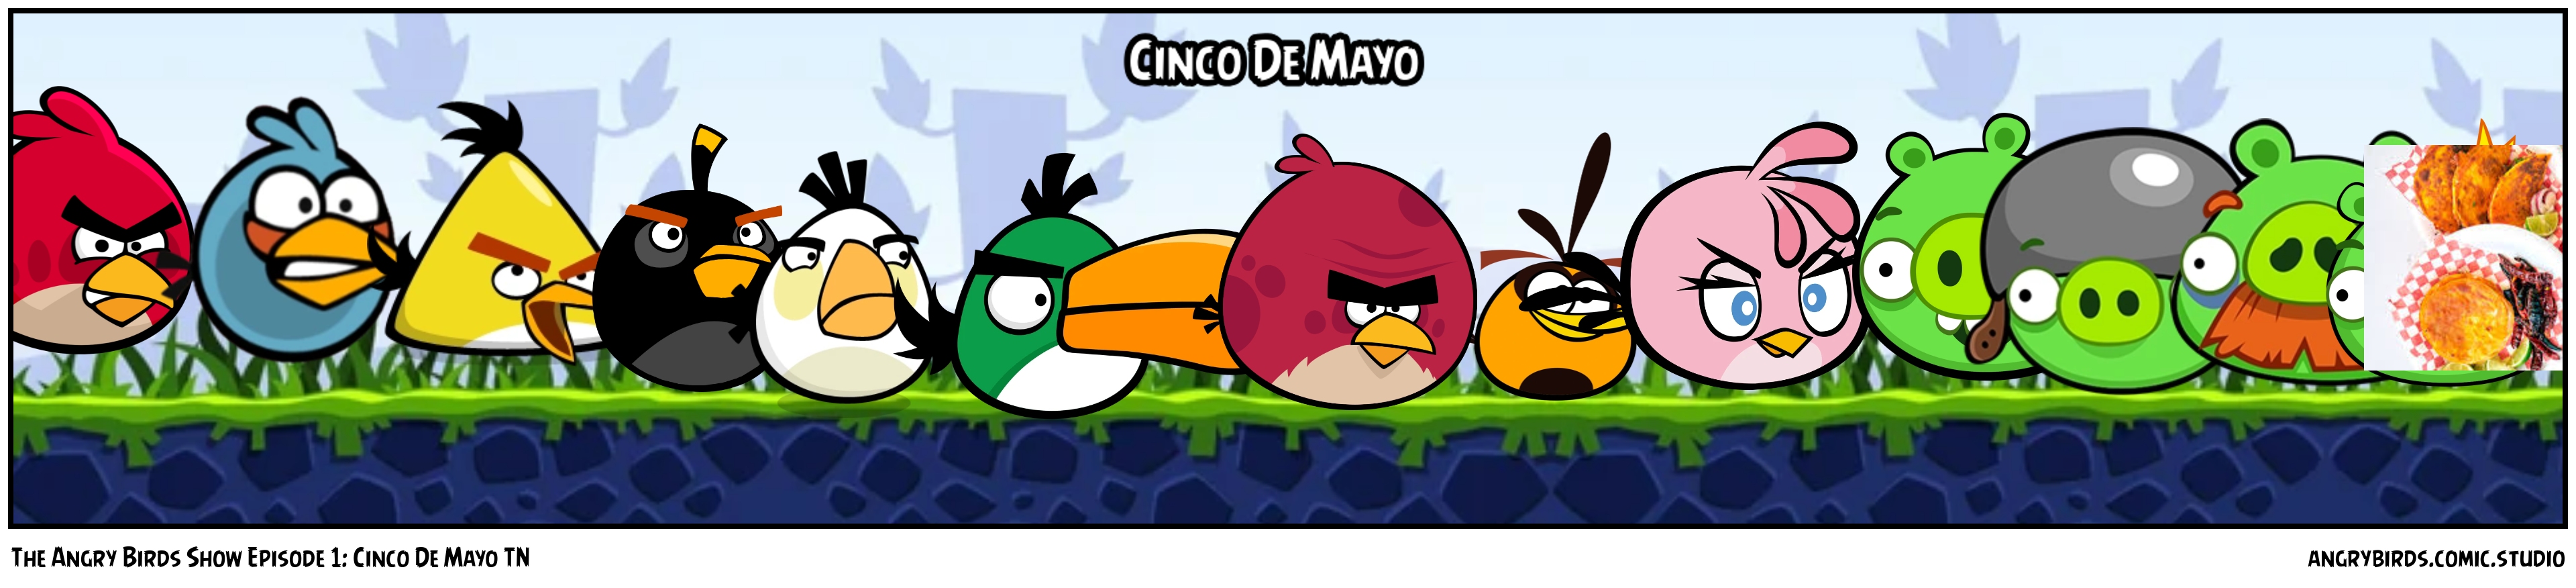 The Angry Birds Show Episode 1: Cinco De Mayo TN